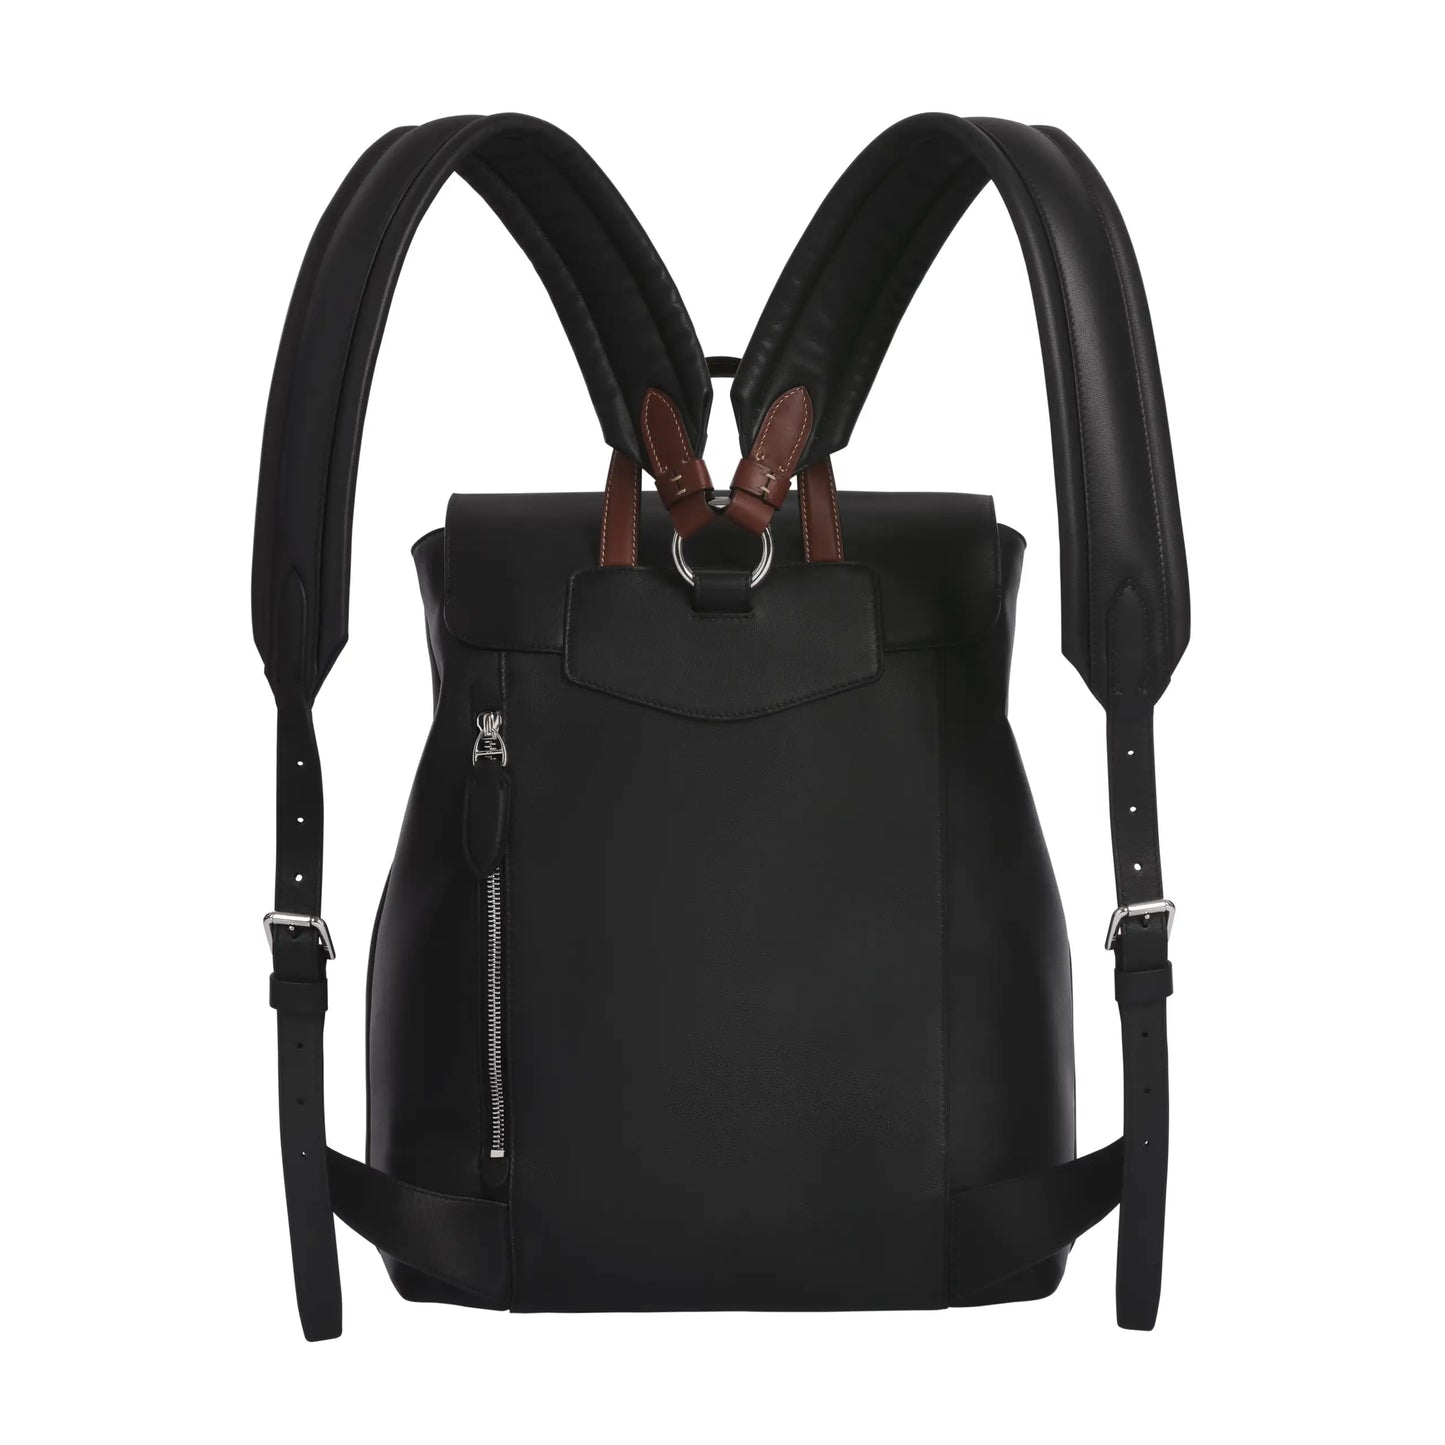 Rucksack aus glattem Kalbsleder in Schwarz mit braunen Details